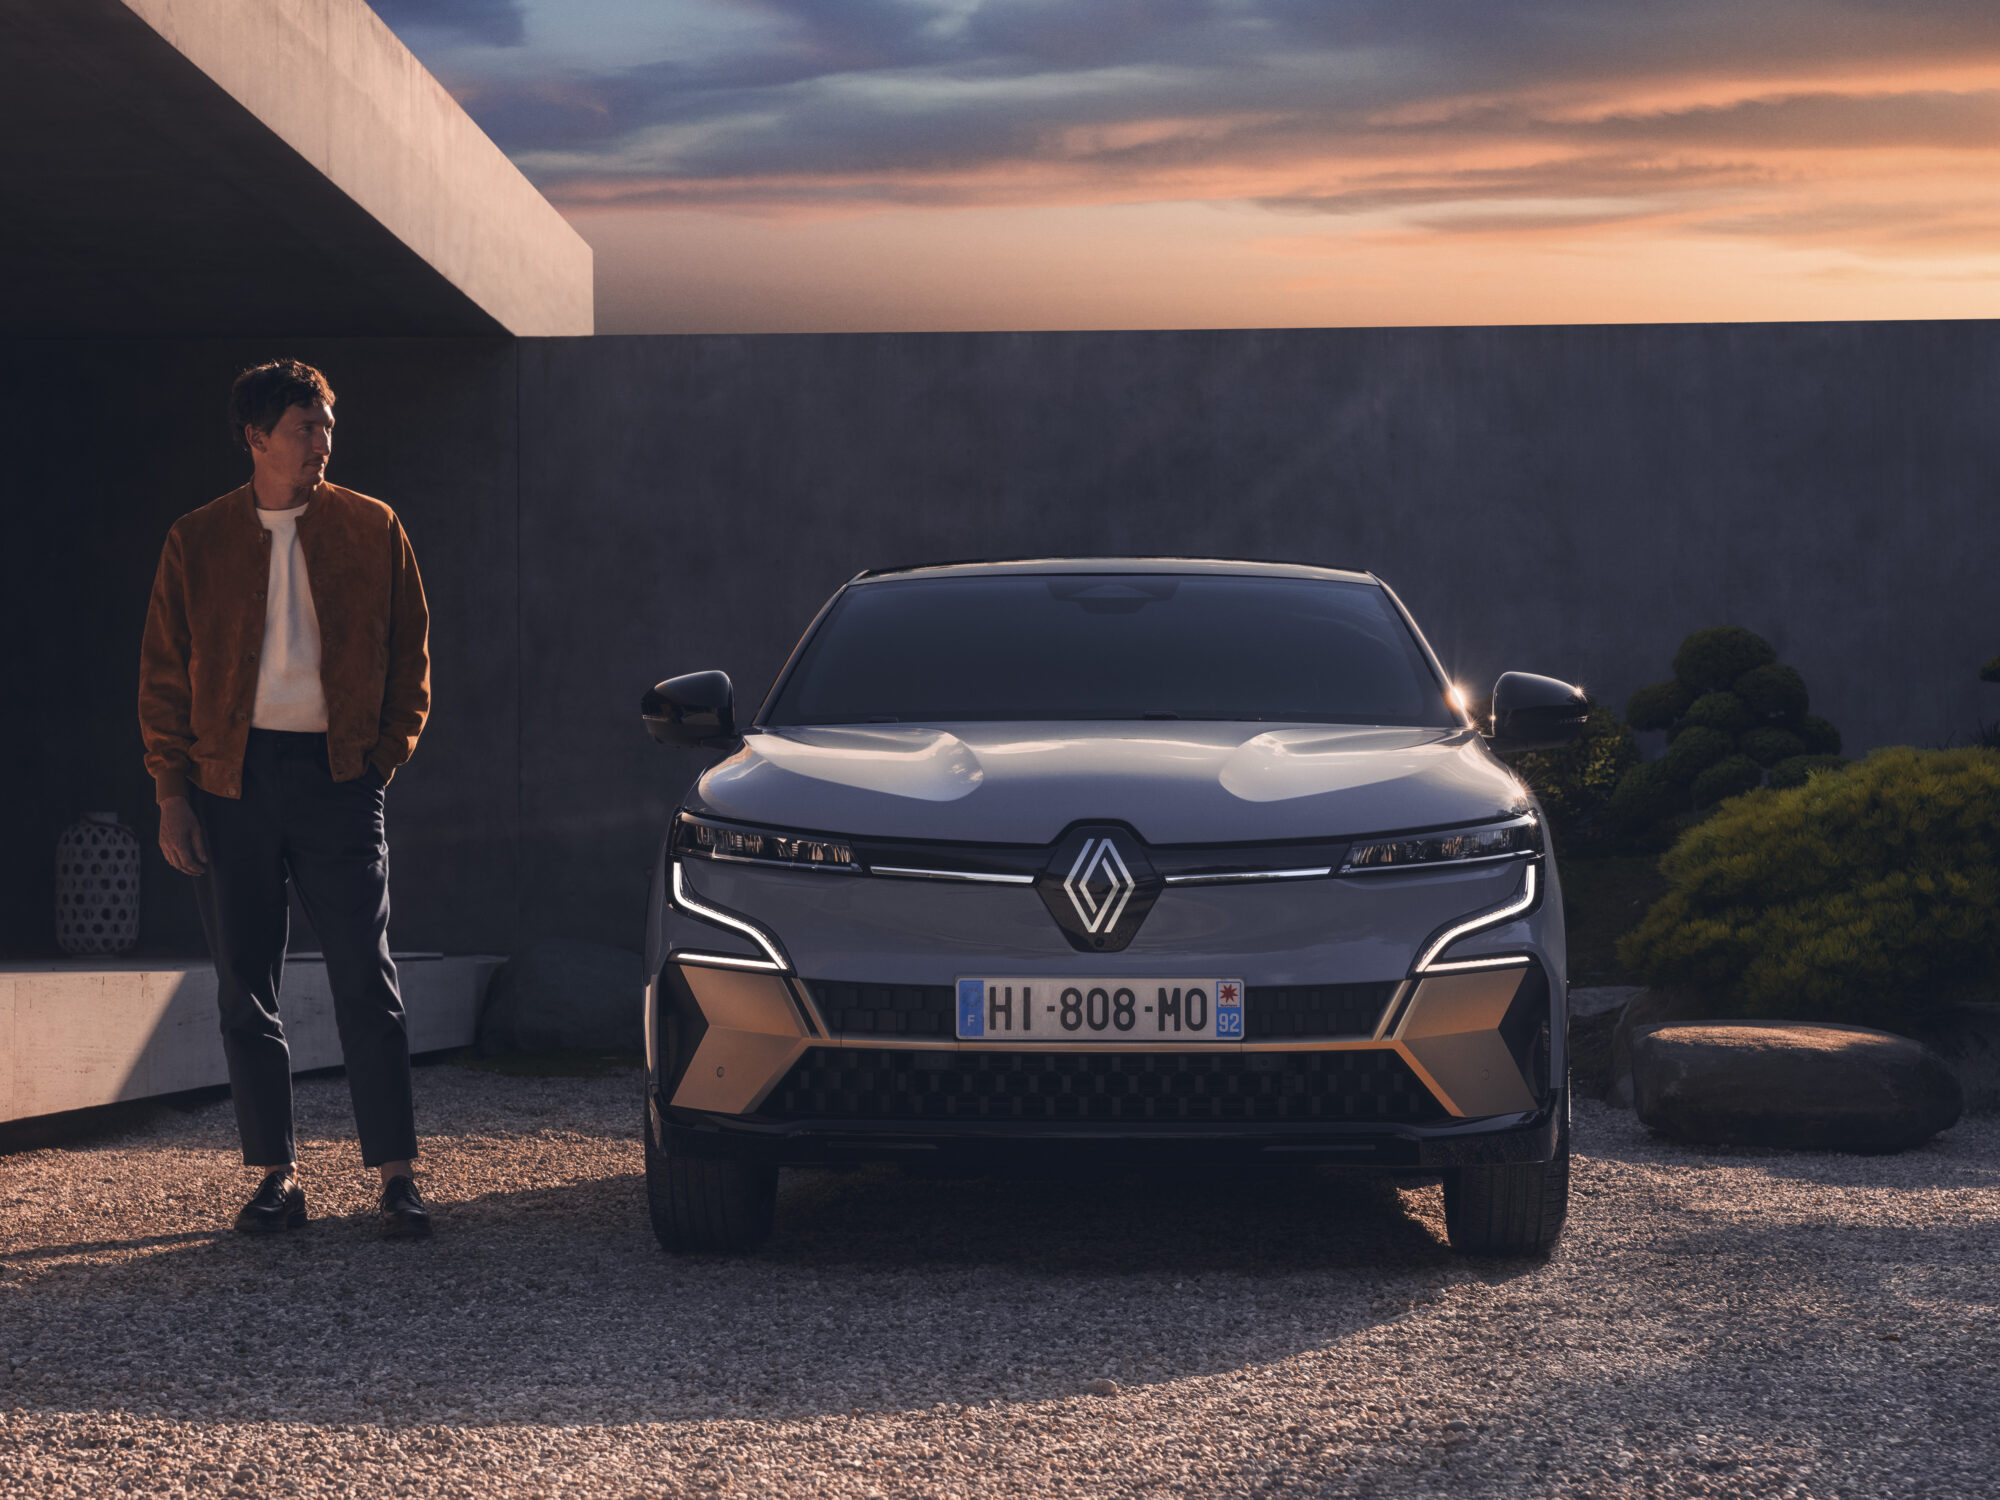 2021 - Nouvelle Renault Mégane E-TECH Electric - Lifestyle